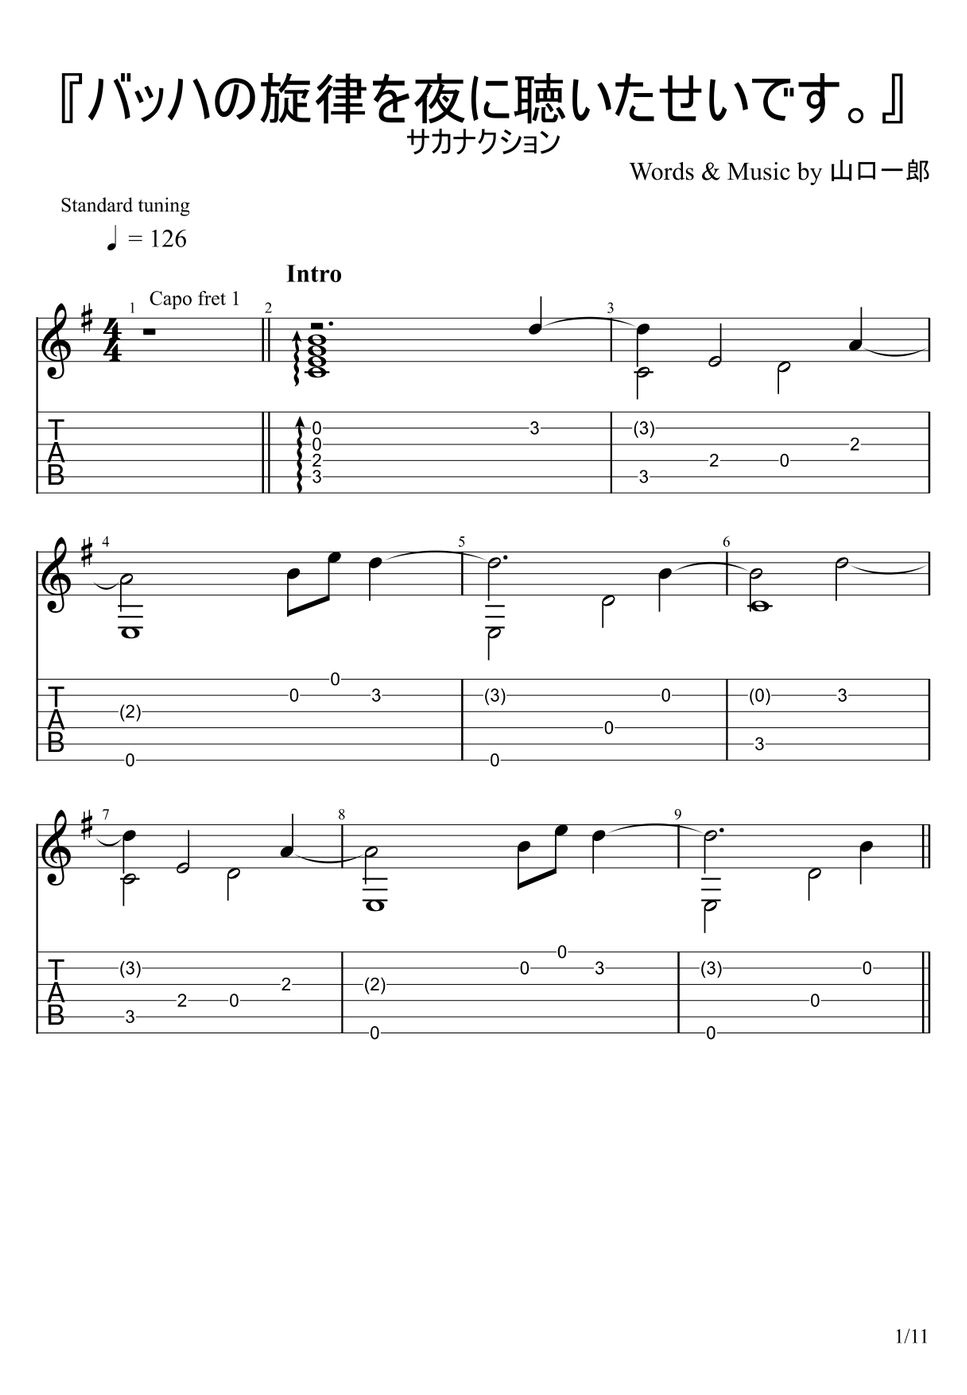 サカナクション - 『バッハの旋律を夜に聴いたせいです。』 (ソロギター) by u3danchou